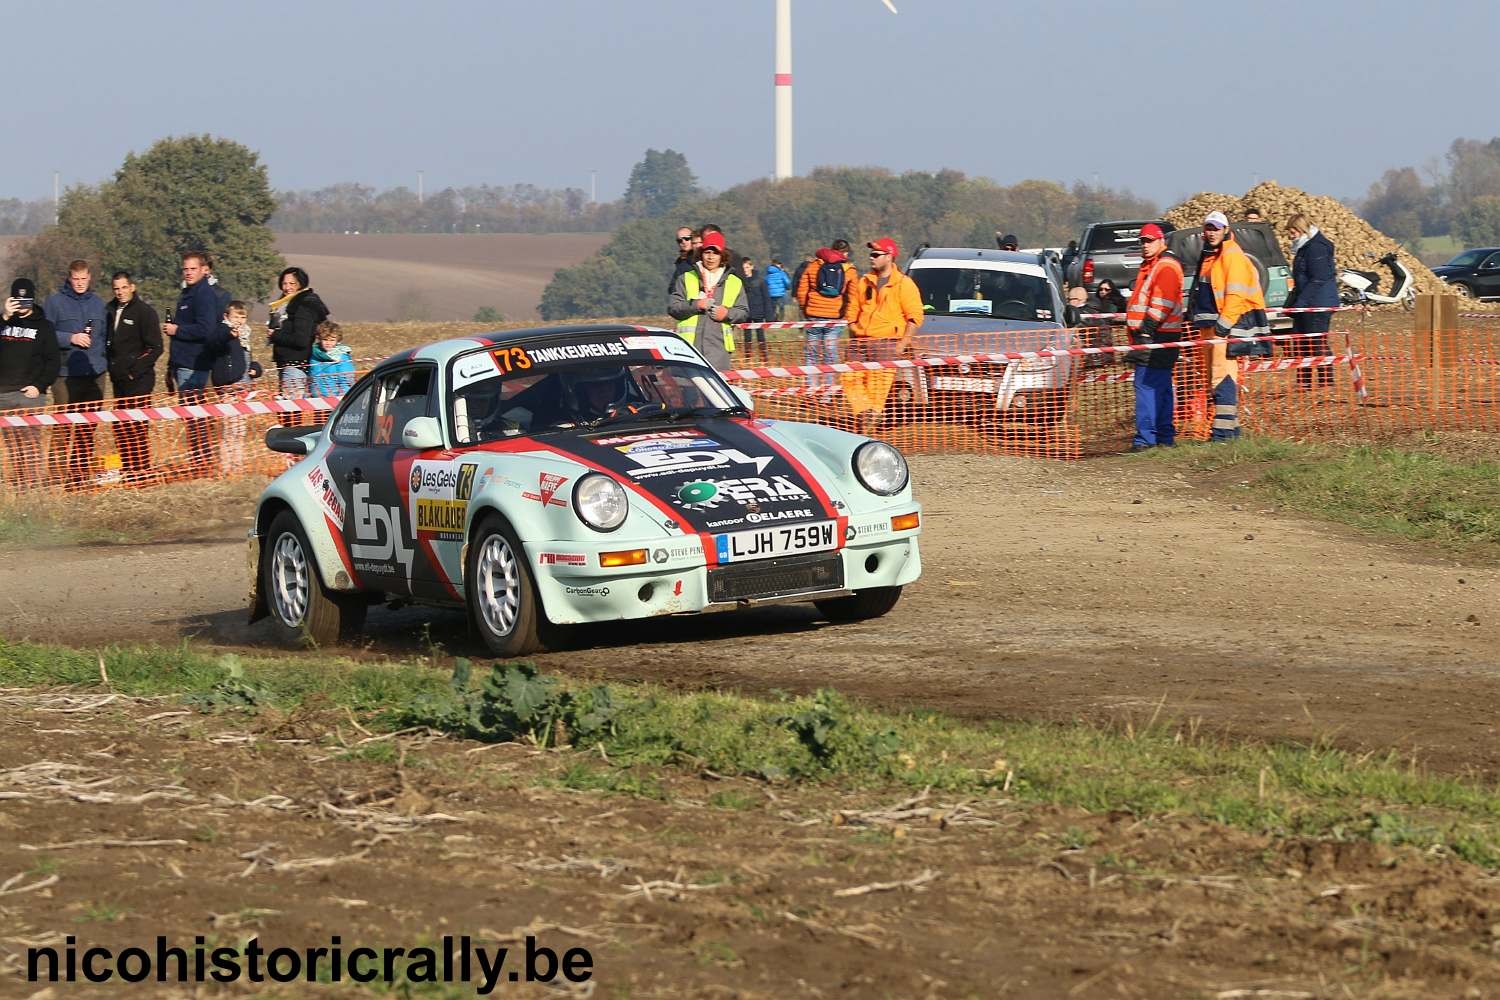 Wedstrijdverslag Patrick Mylleville en Jochen Vandersarren in de Condroz Rallye.